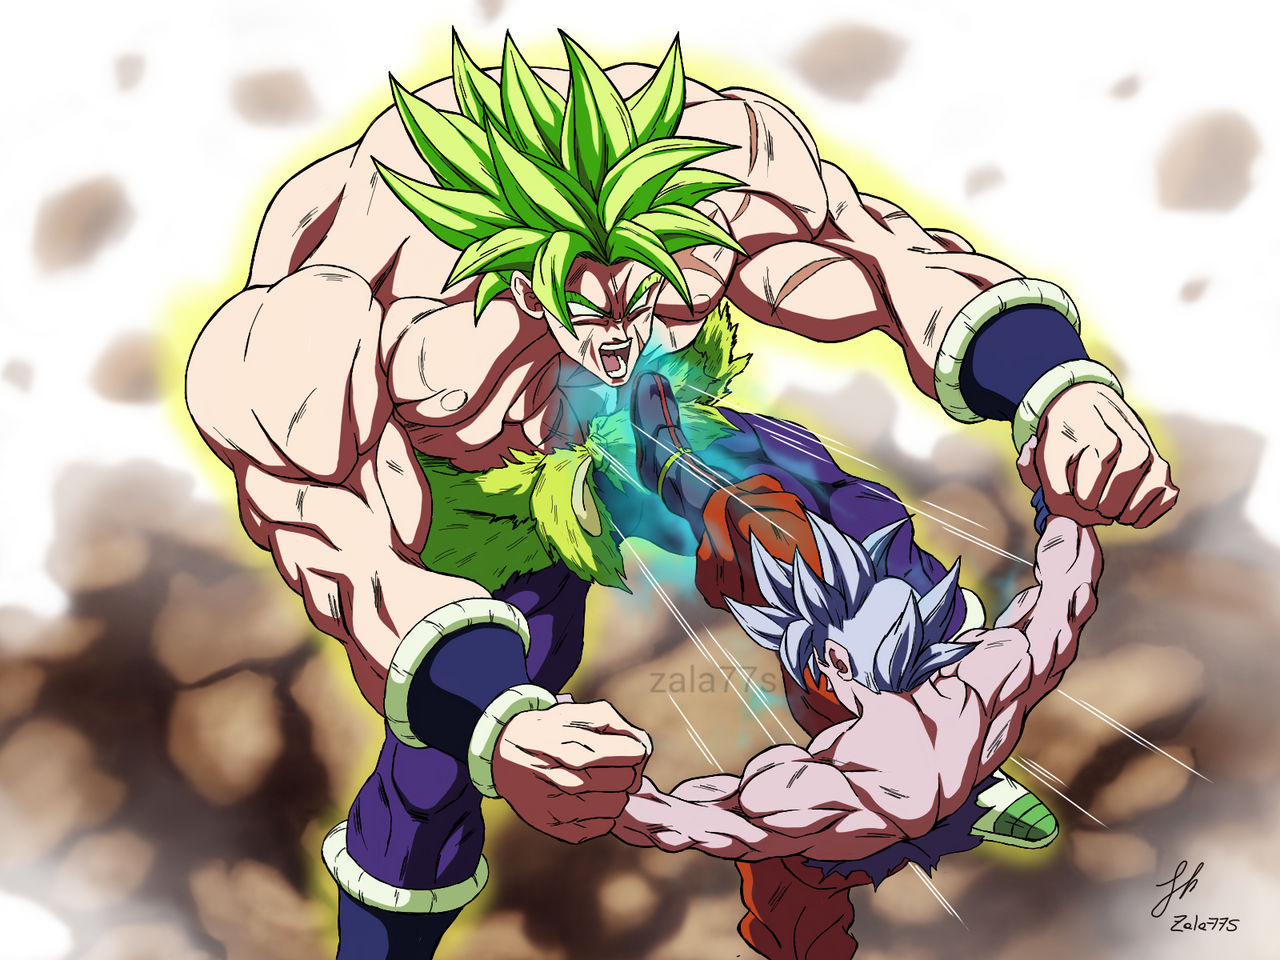 Goku ultra instinto vs Broly !! by zala77s on DeviantArt